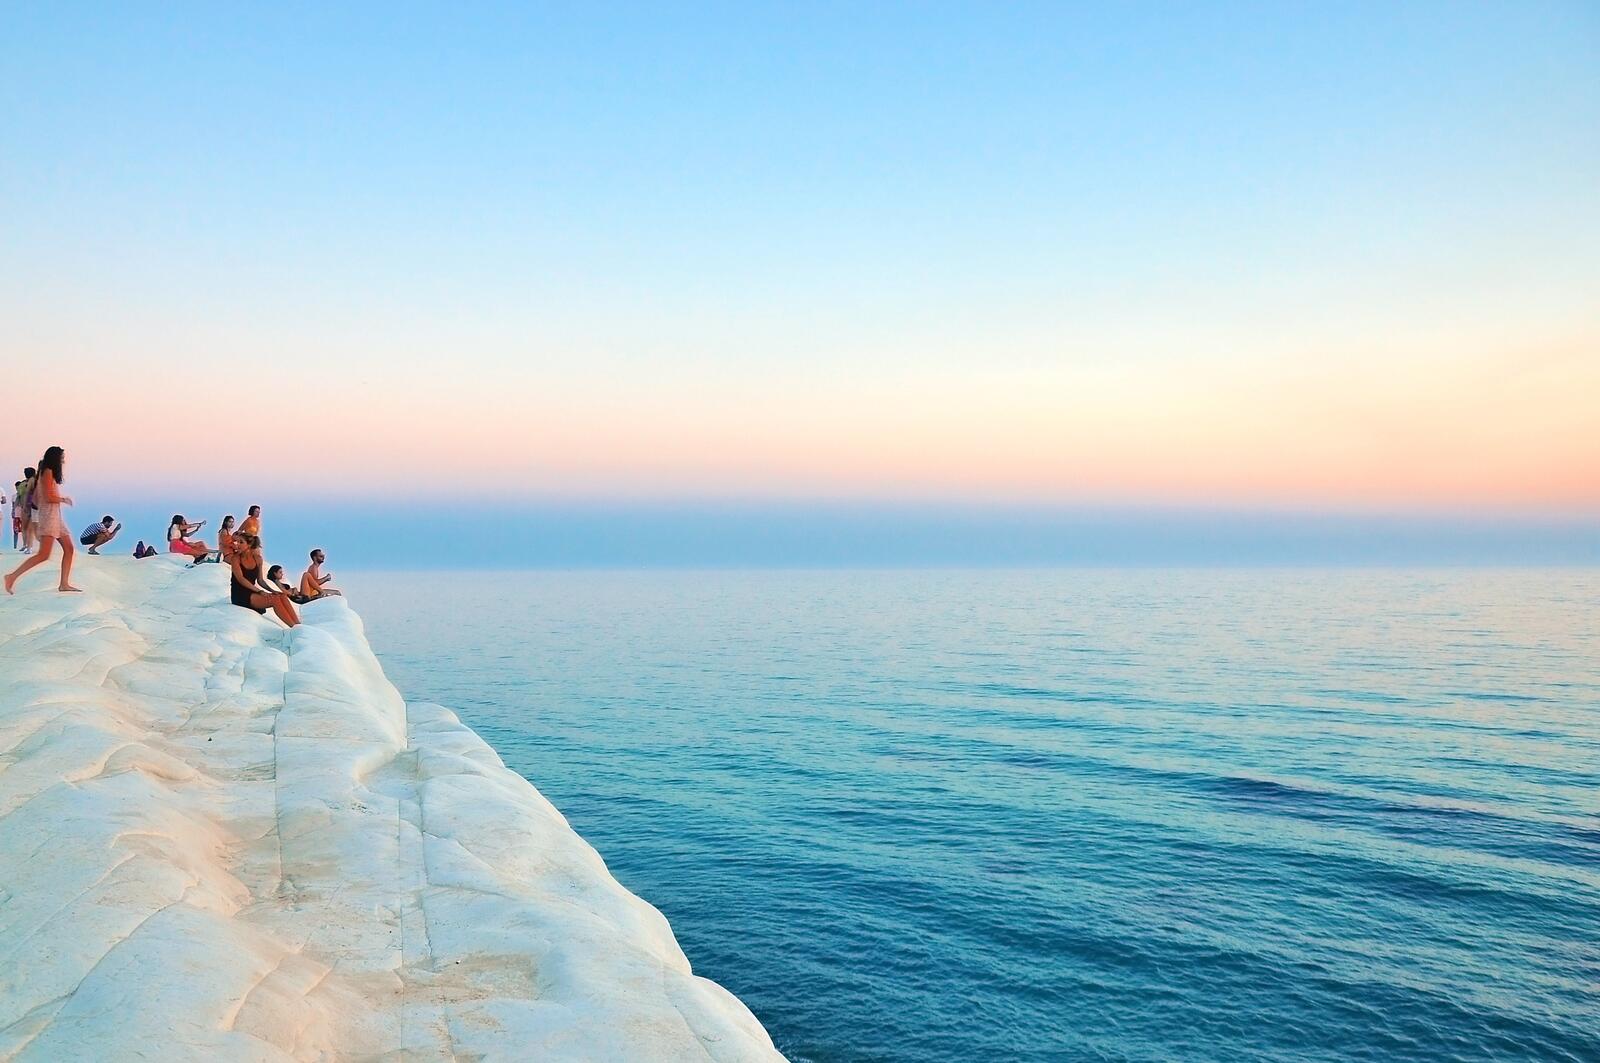 Бесплатное фото Туристы смотрят на морской пейзаж со скалы